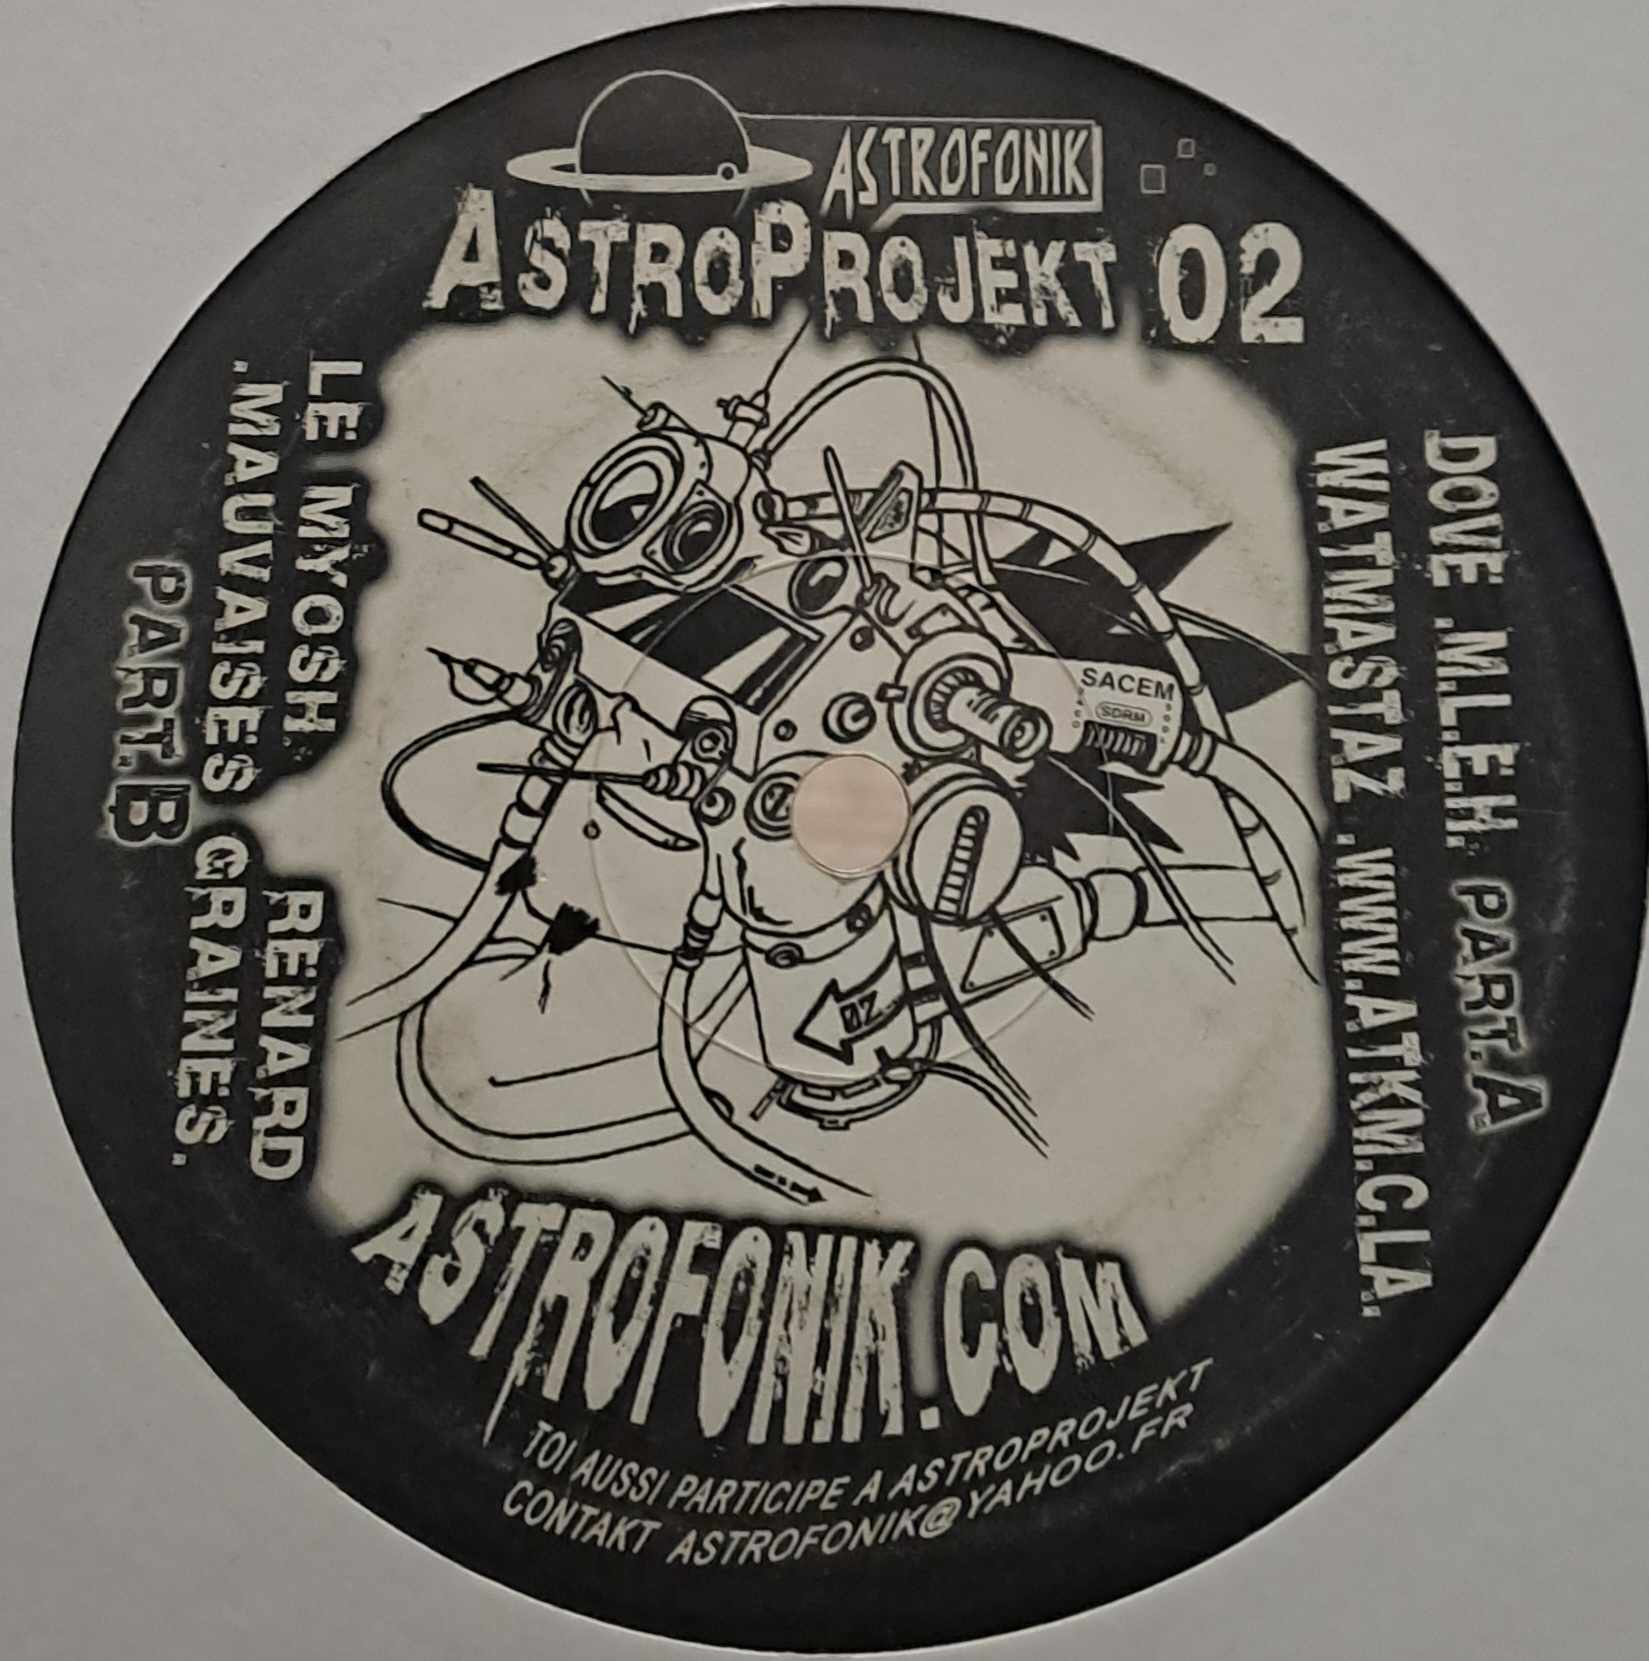 Astroprojekt 02 - vinyle tribecore